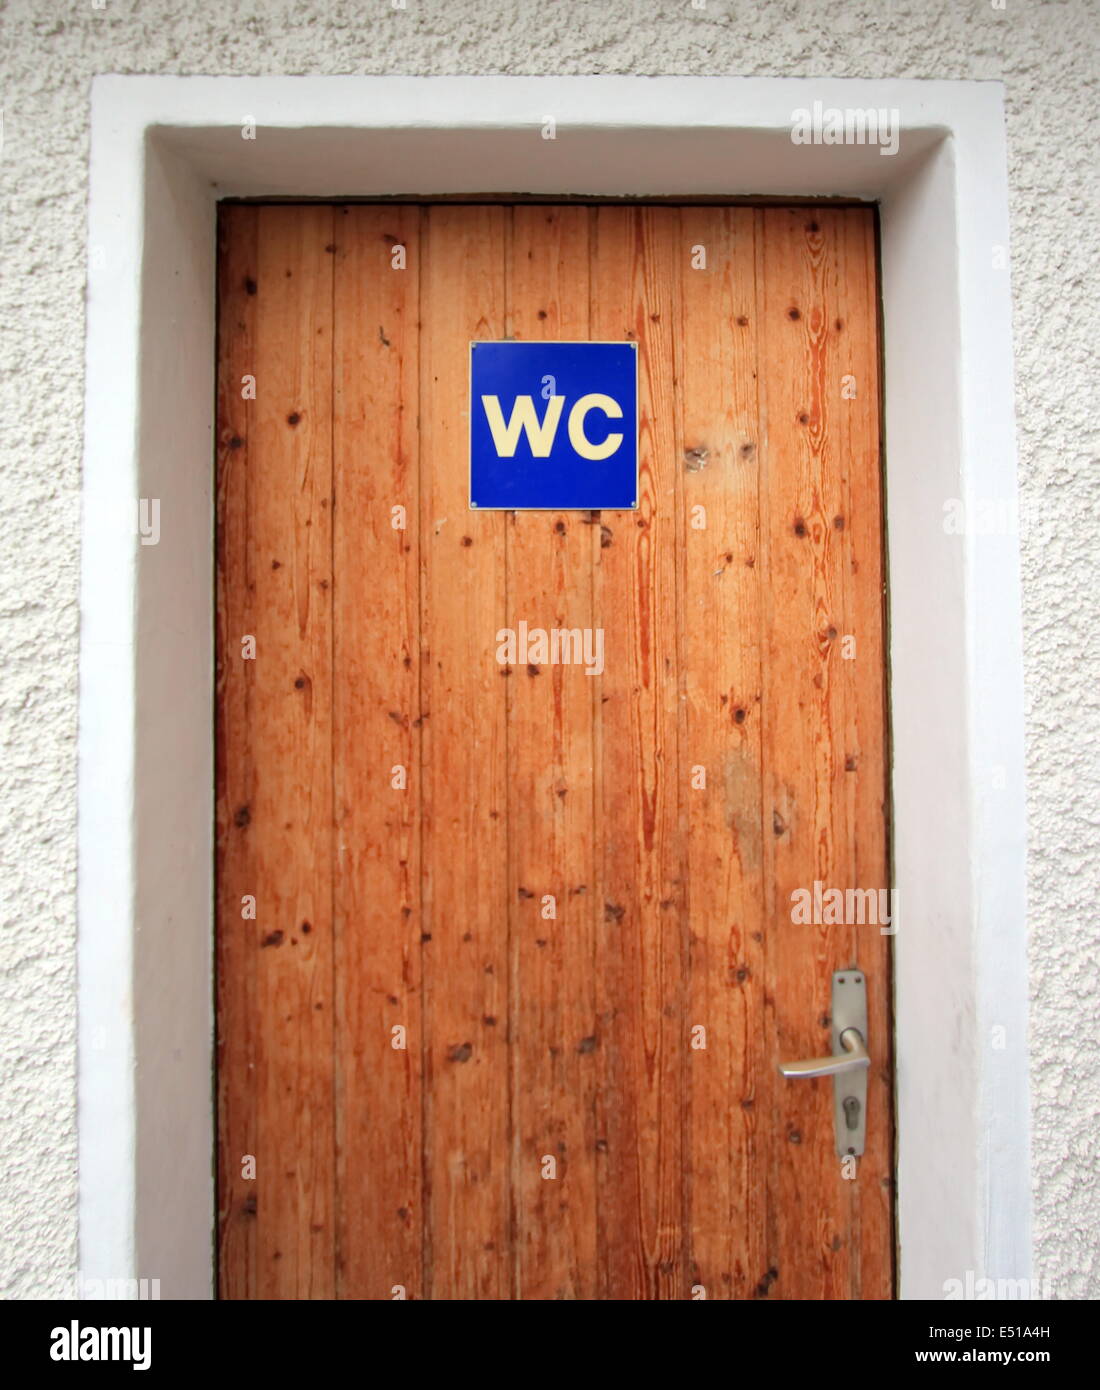 WC door Stock Photo